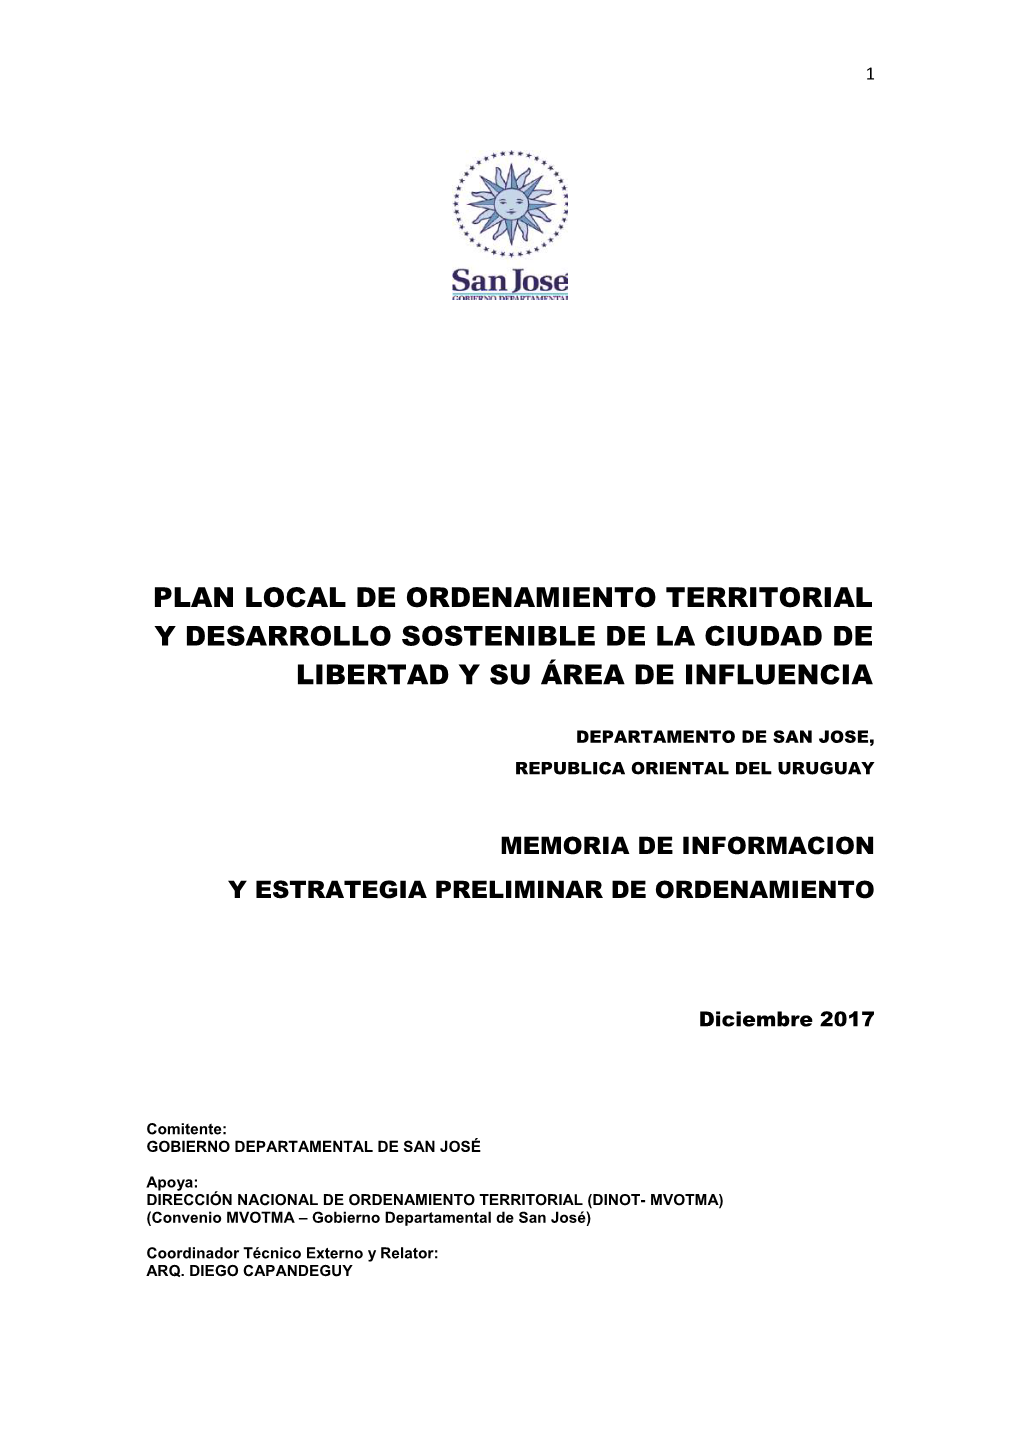 Plan Local De Ordenamiento Territorial Y Desarrollo Sostenible De La Ciudad De Libertad Y Su Área De Influencia